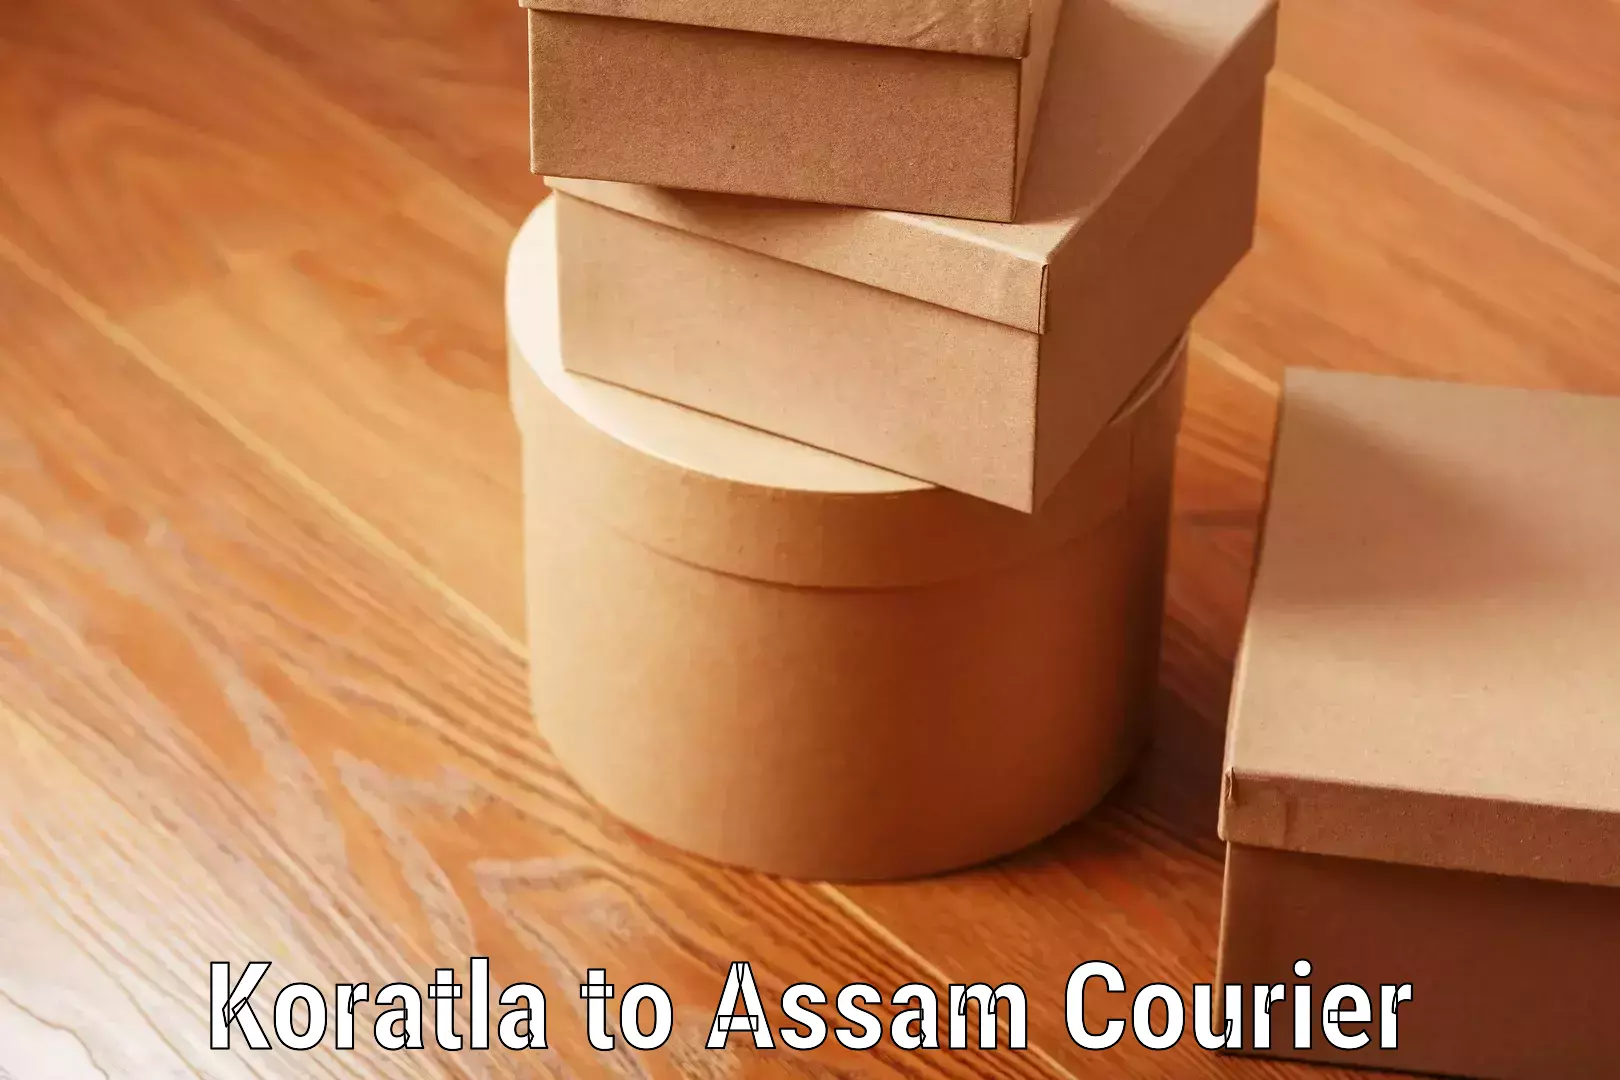 Efficient luggage delivery Koratla to Assam